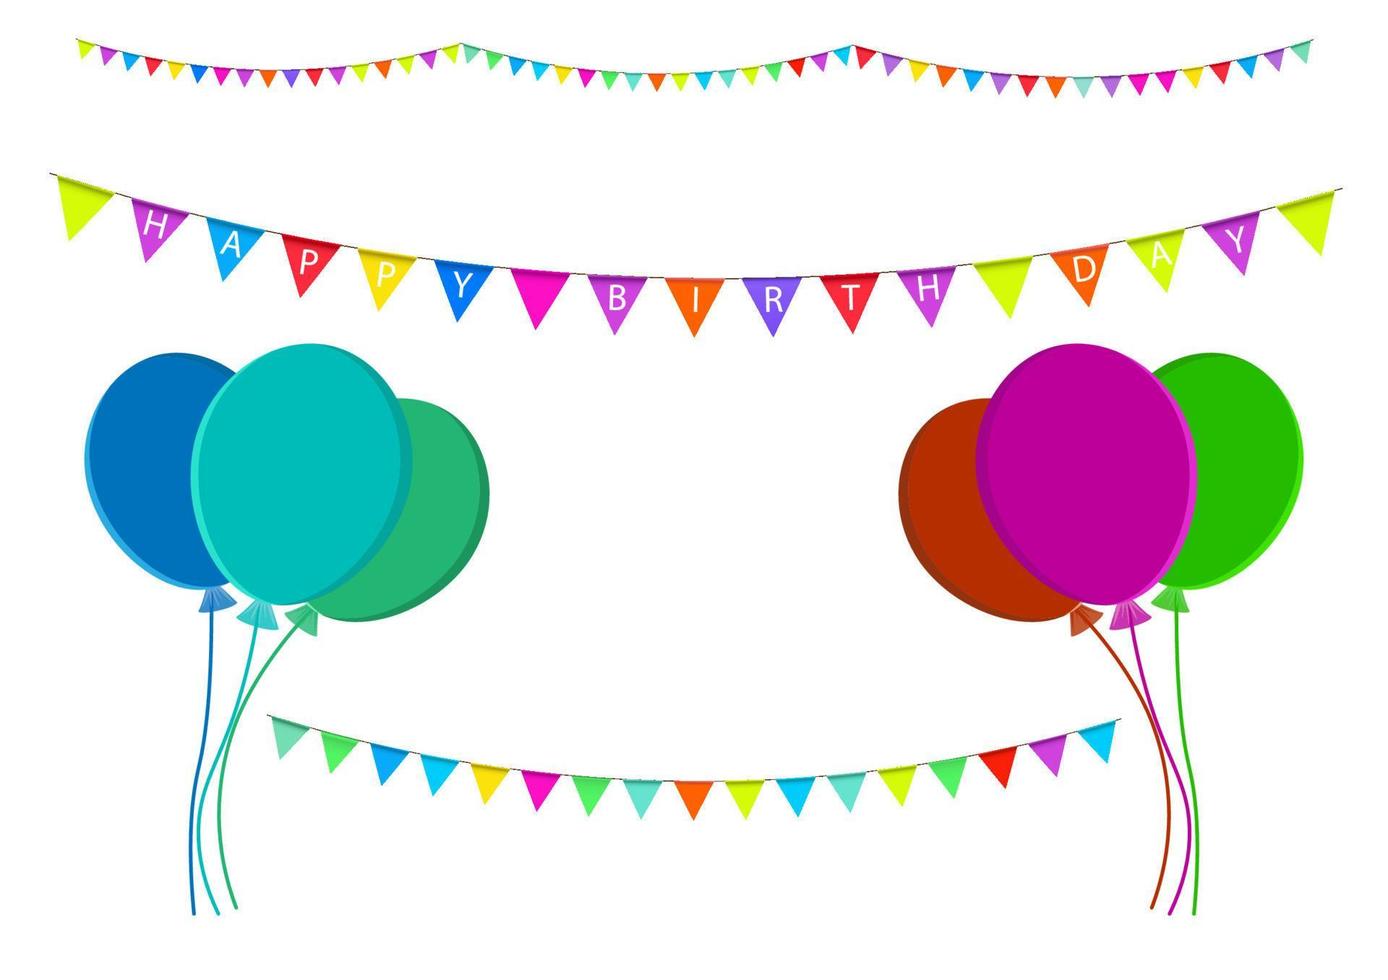 grafiek festival vlag met tekst gelukkig verjaardag voor backdrop achtergrond vector illustratie